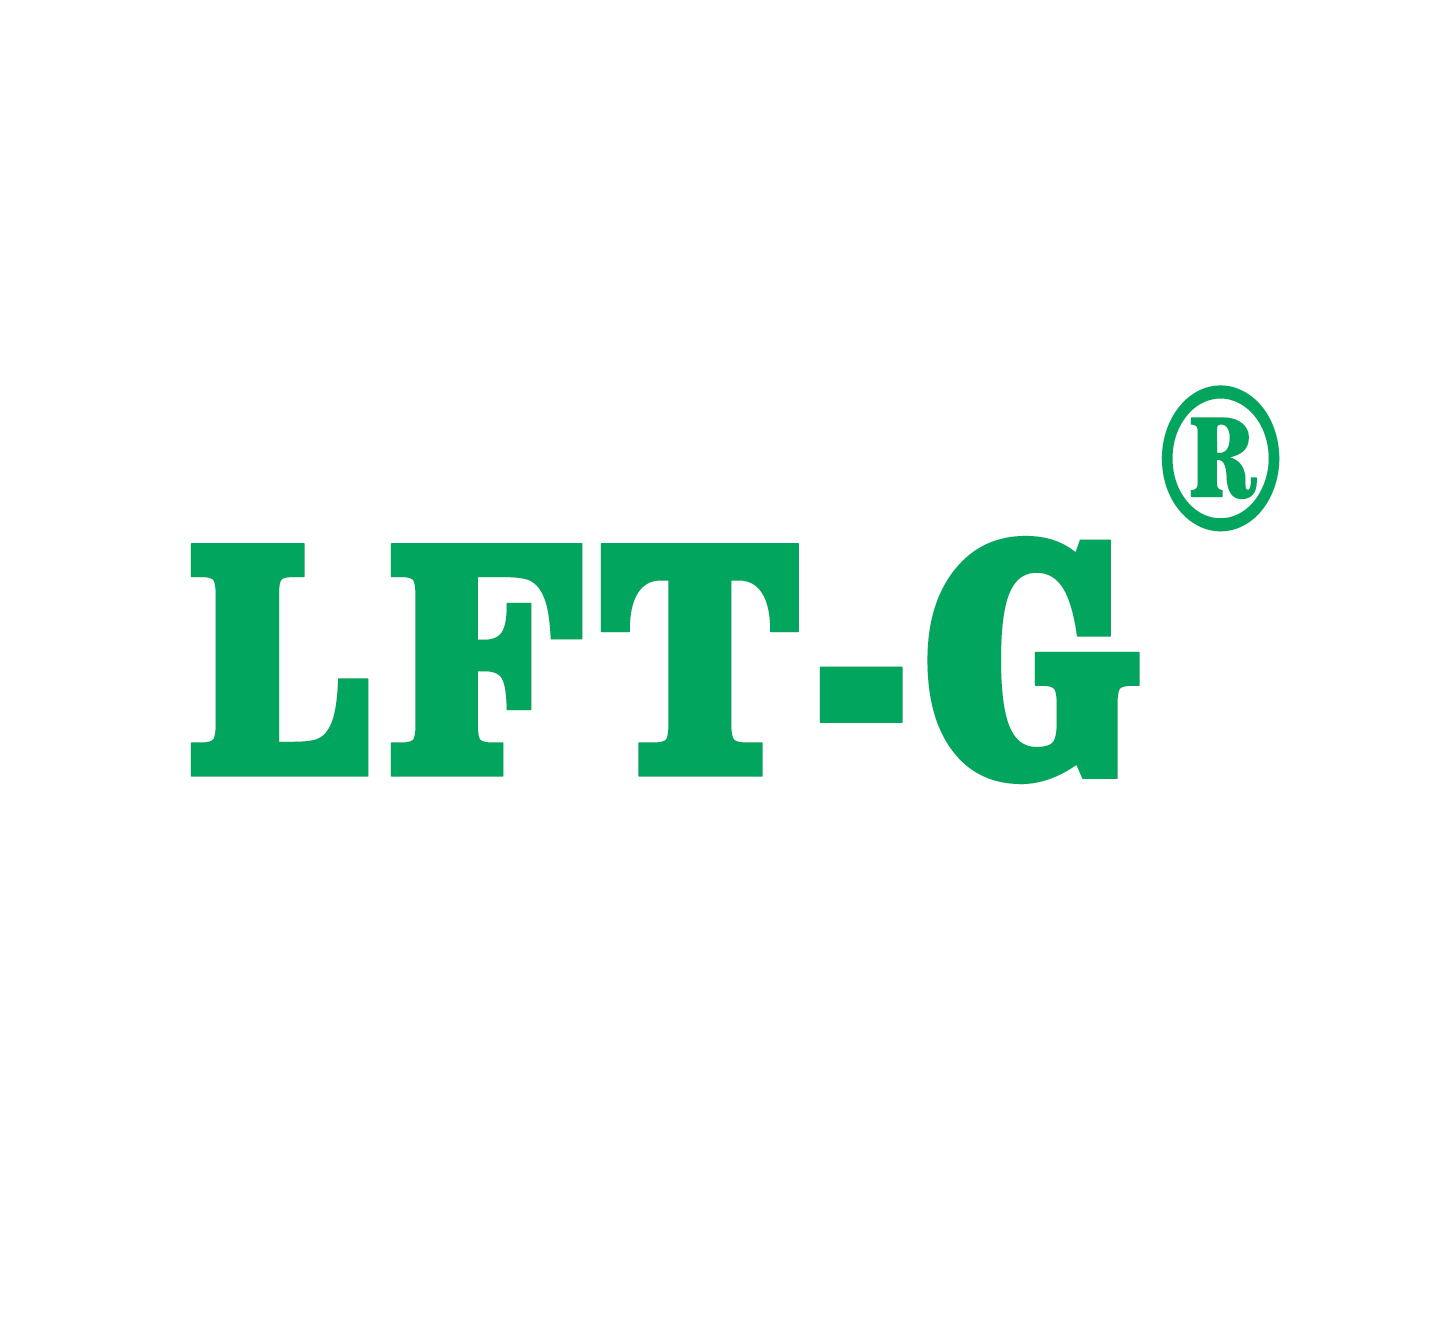  LFT-G comece uma nova jornada no novo ano